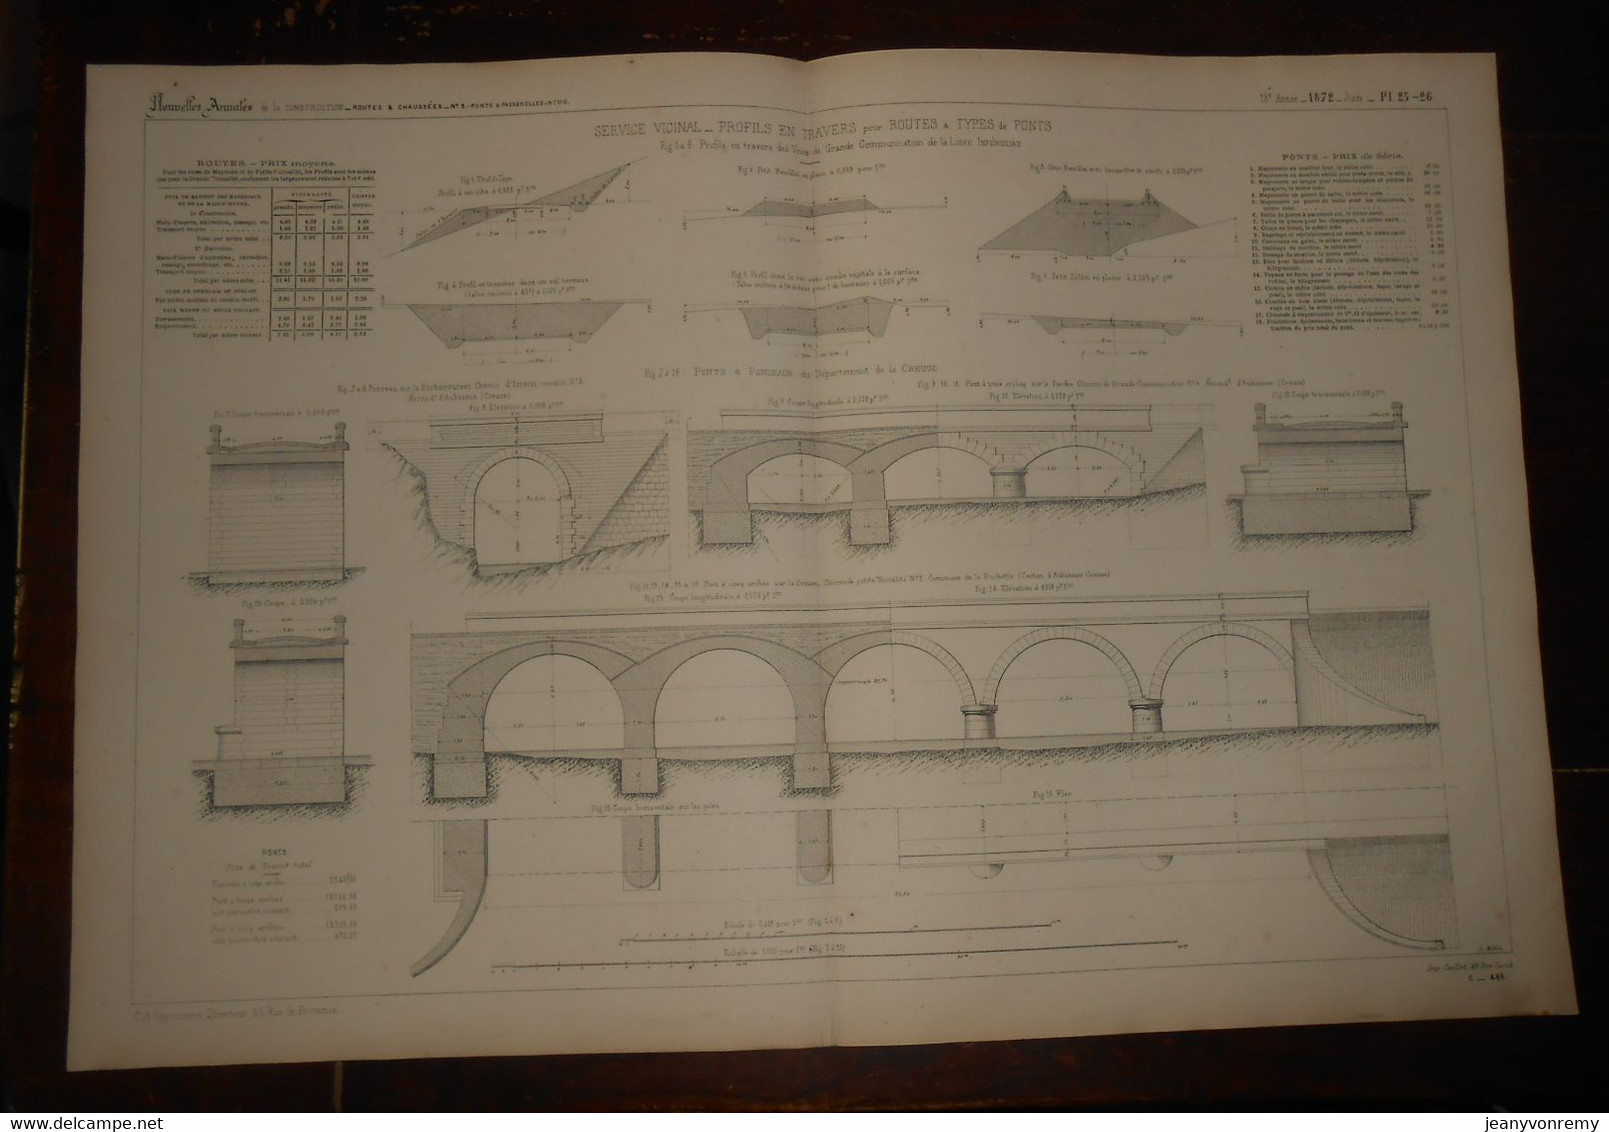 Plan. Service Vicinal. Profils En Travers Pour Routes Et Types De Ponts. 1872. - Travaux Publics